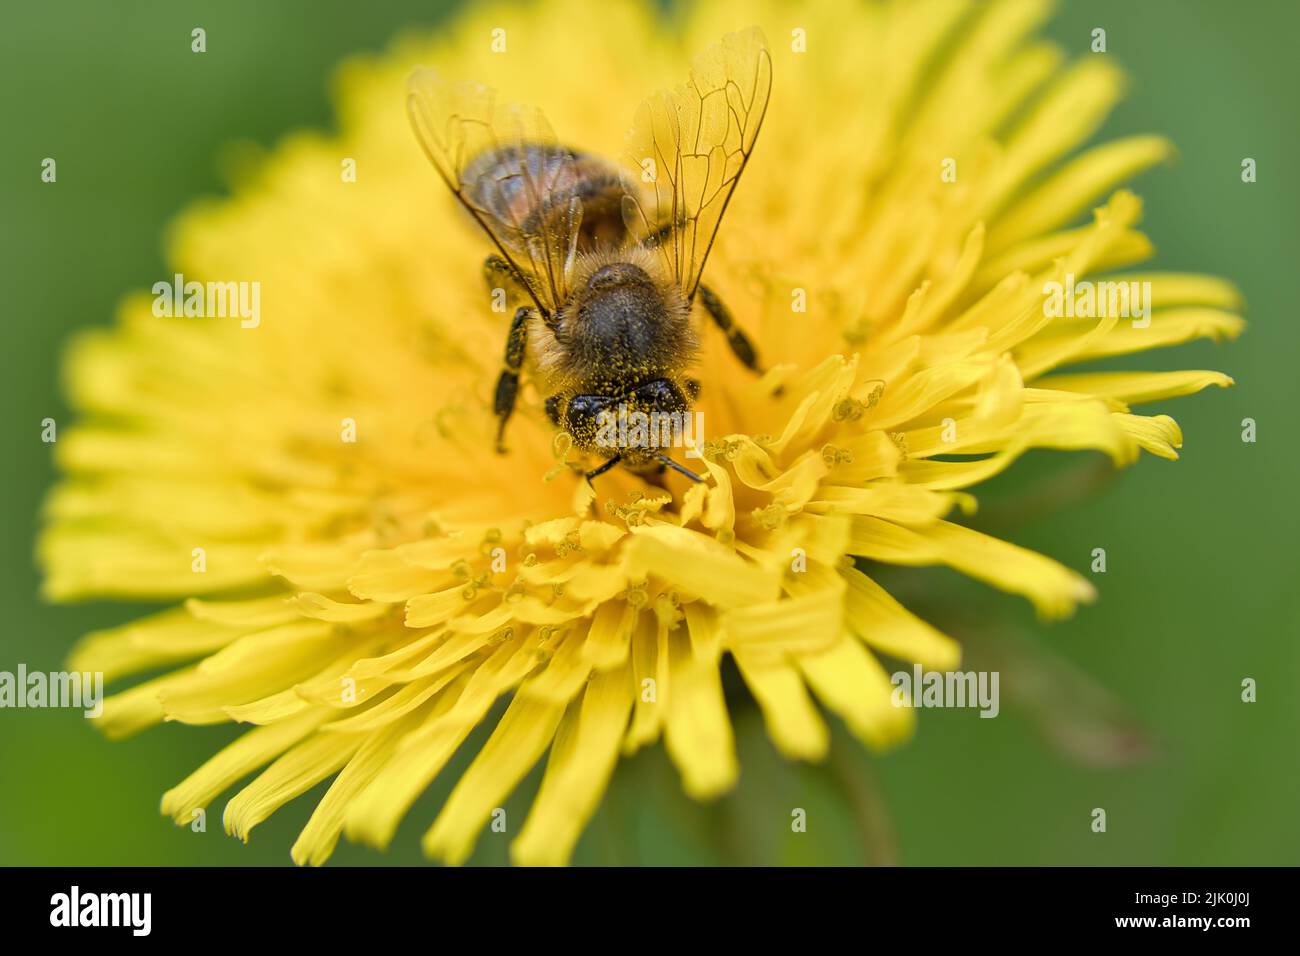 Honigbiene sammelt Nektar auf einer gelben Blume des Dandelions. Fleißige Insekten aus der Natur. Von Bienen ernten wir den Honig. Tierfoto aus der Natur Stockfoto